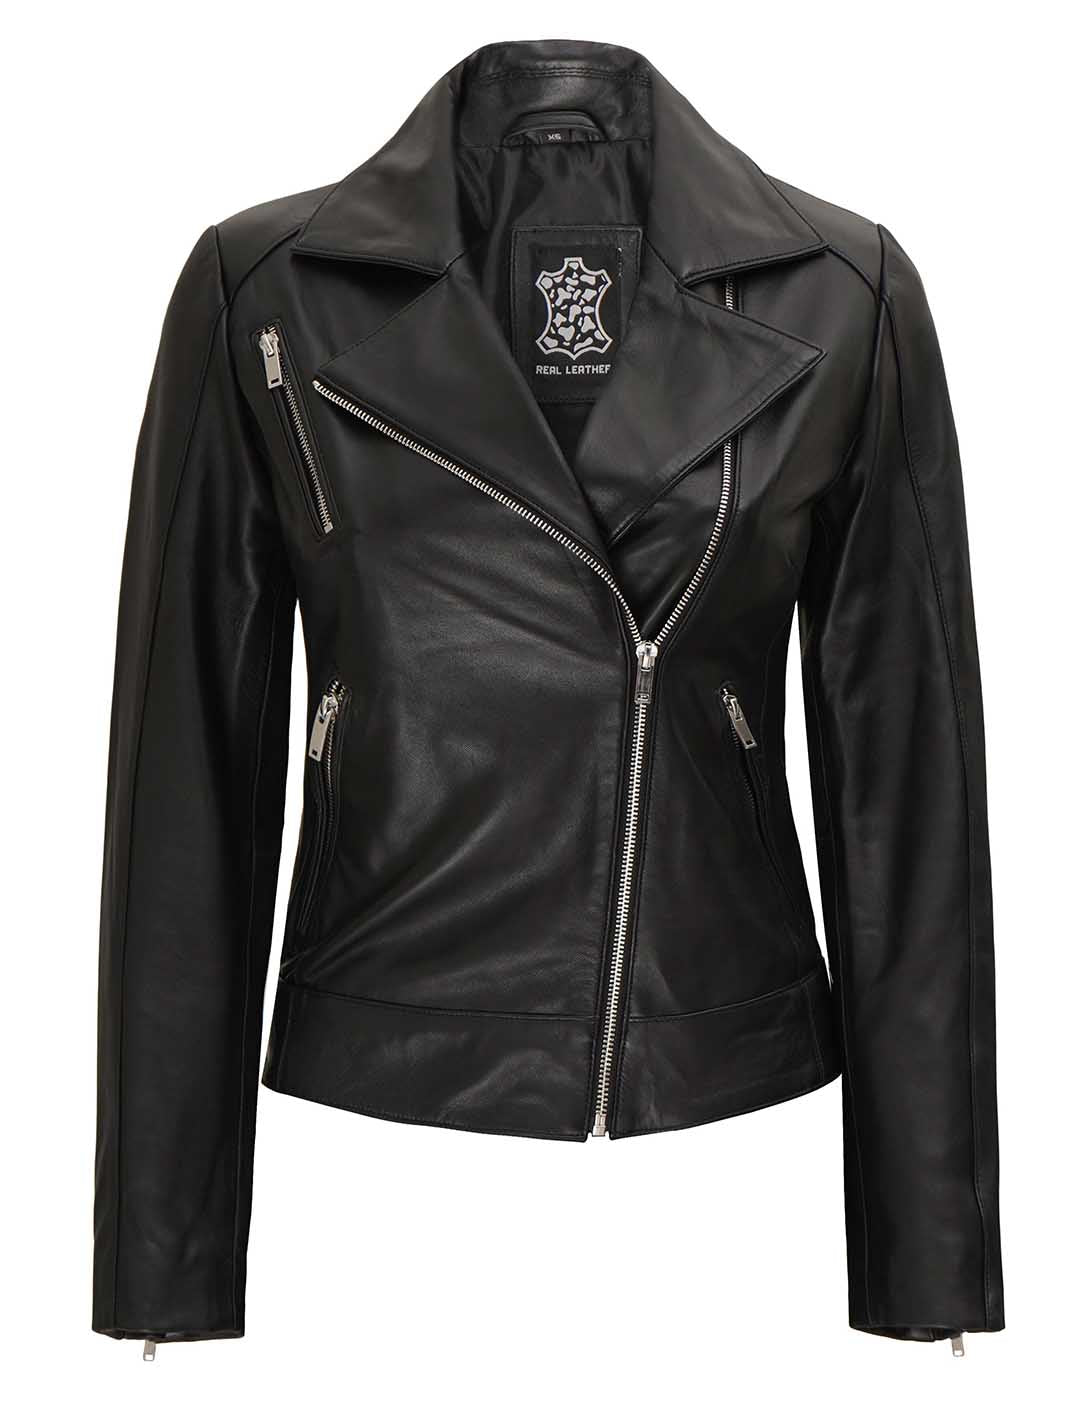 Linda Womens Black Leather Jacket